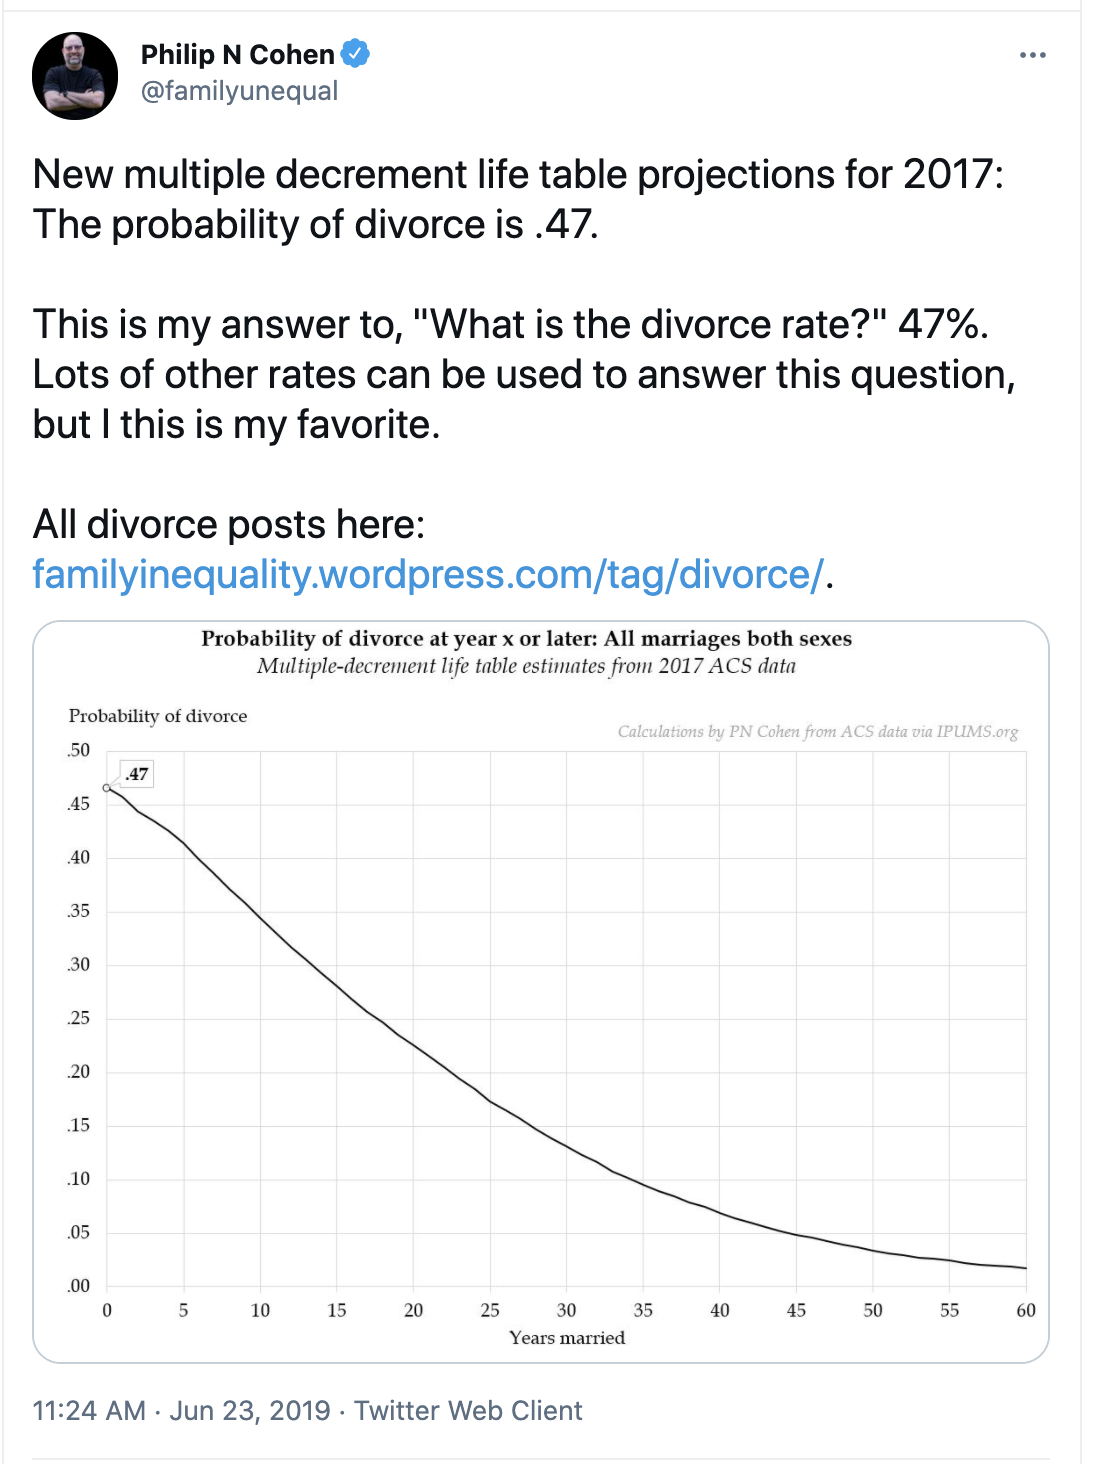 U.S. Divorce Rate is 47% per demographer Philiip N. Cohen, University of Maryland